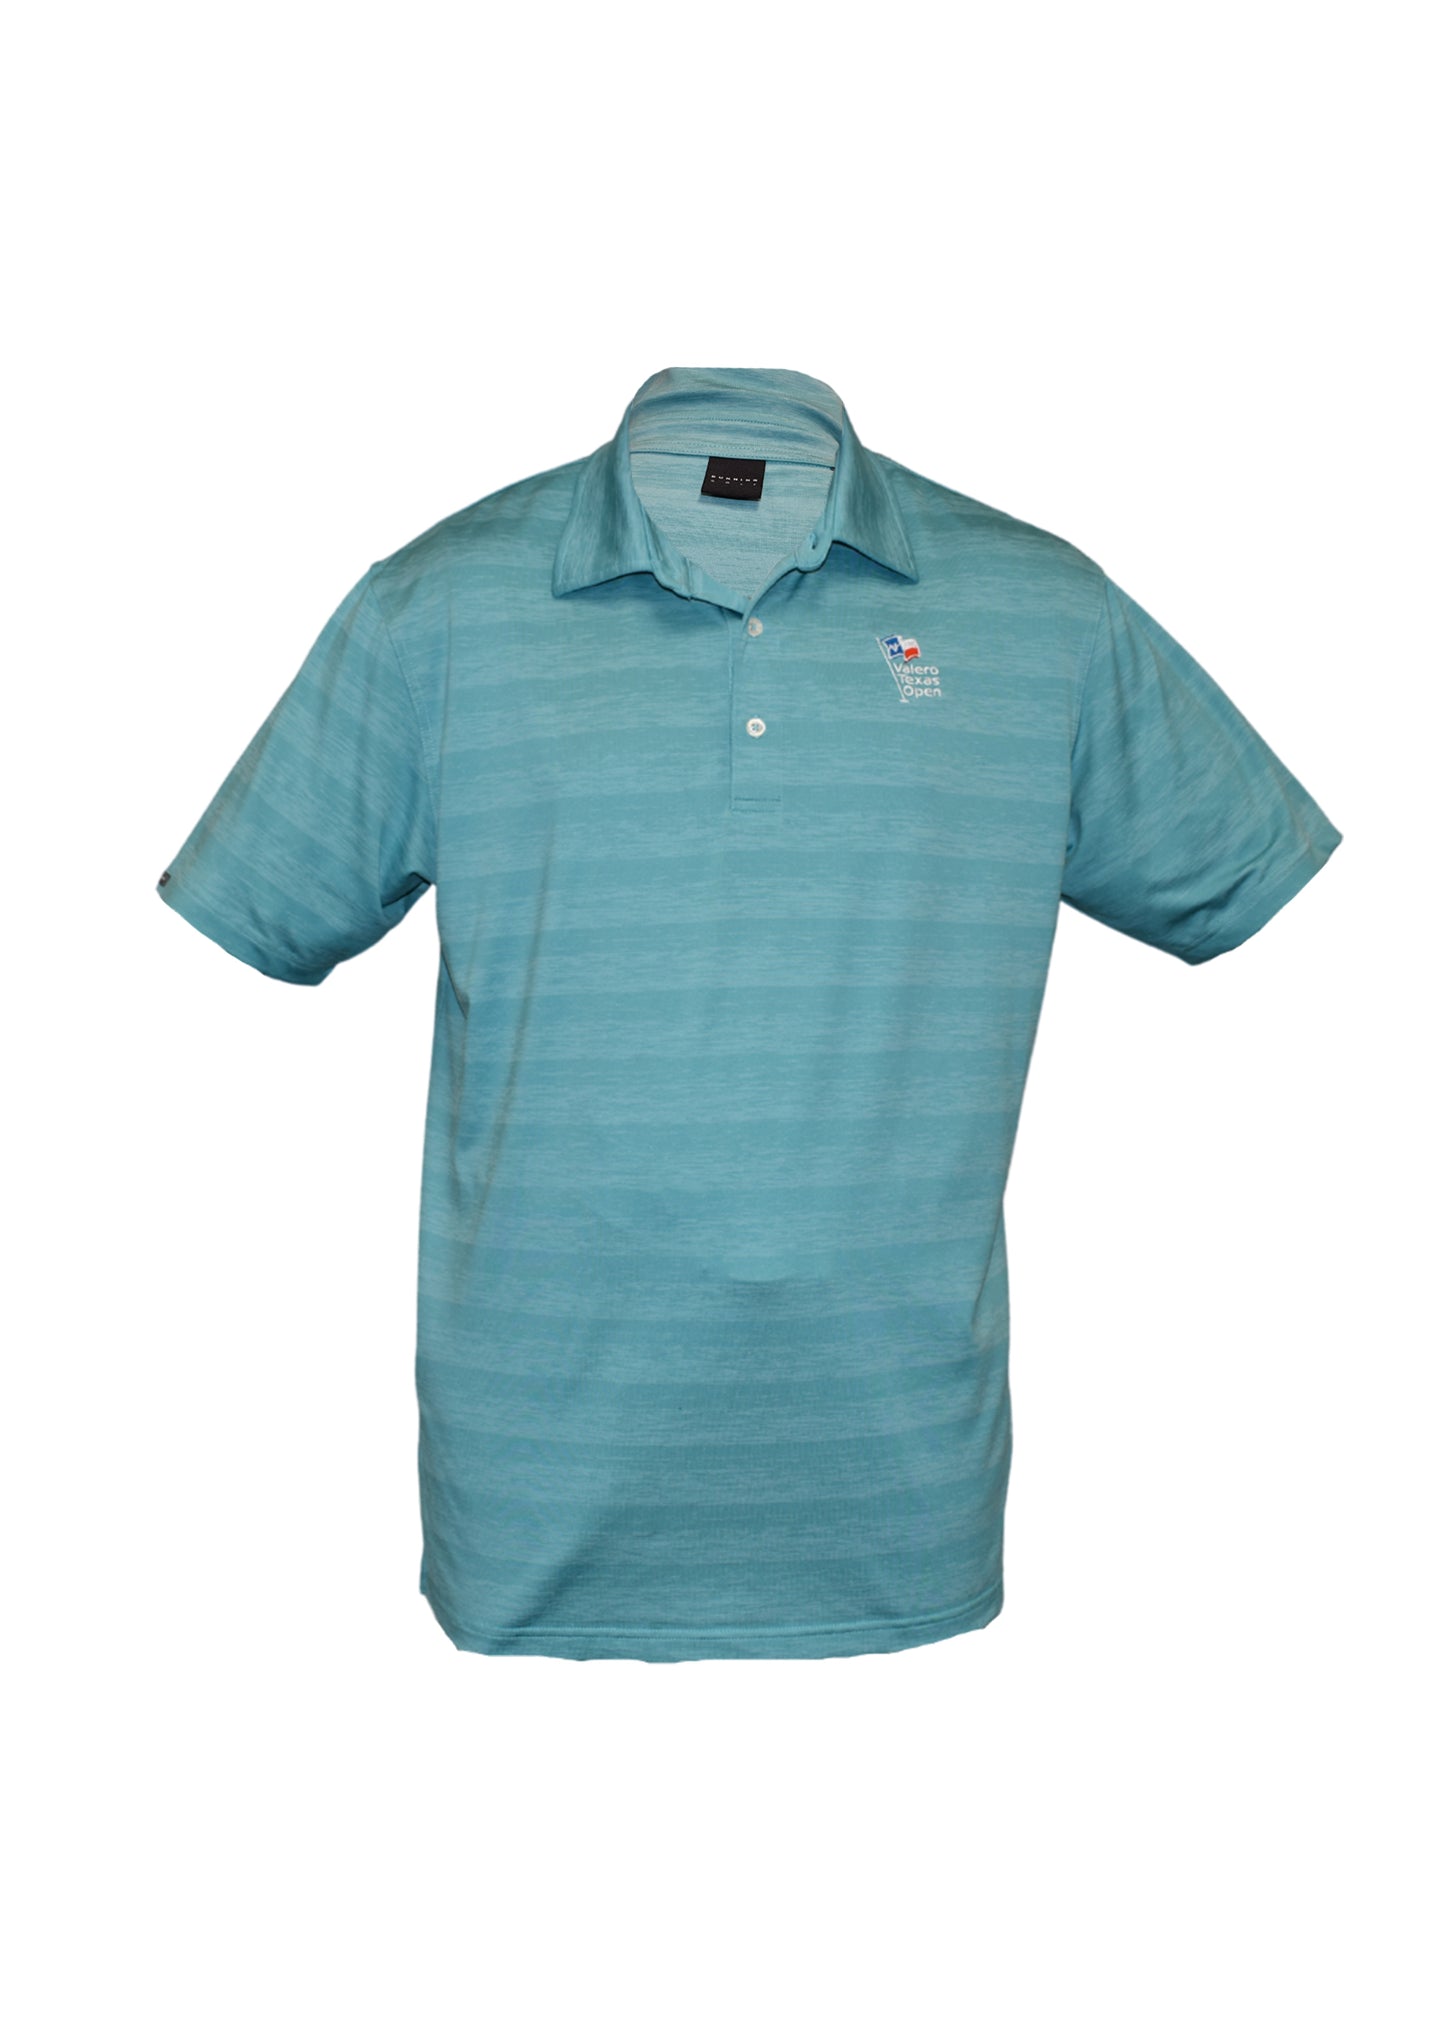 Men's Dunning Prescot Golf Shirt